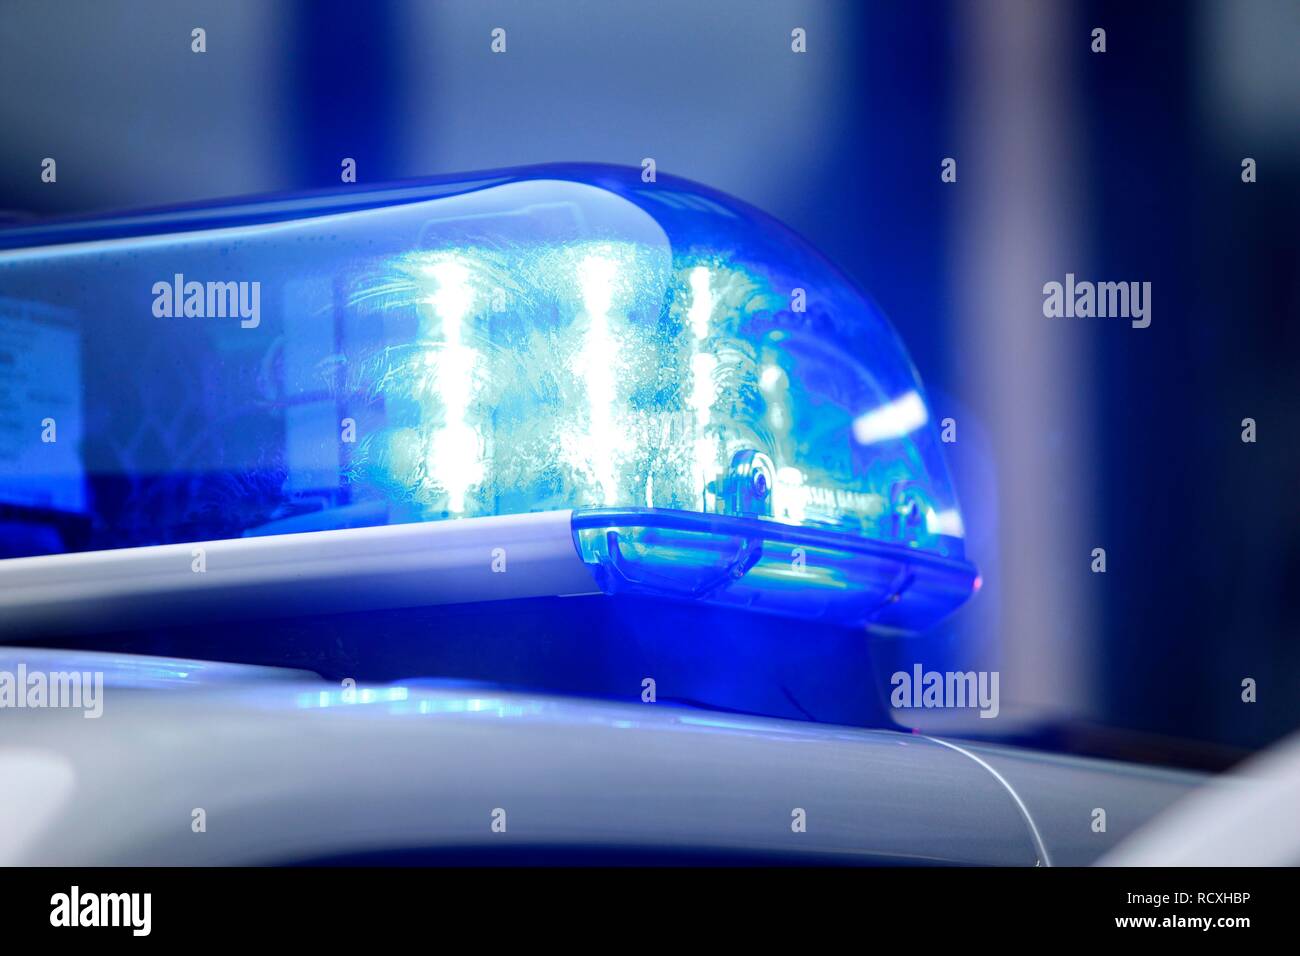 Patrulla de la policía, con luces LED azul parpadeando Fotografía de stock  - Alamy